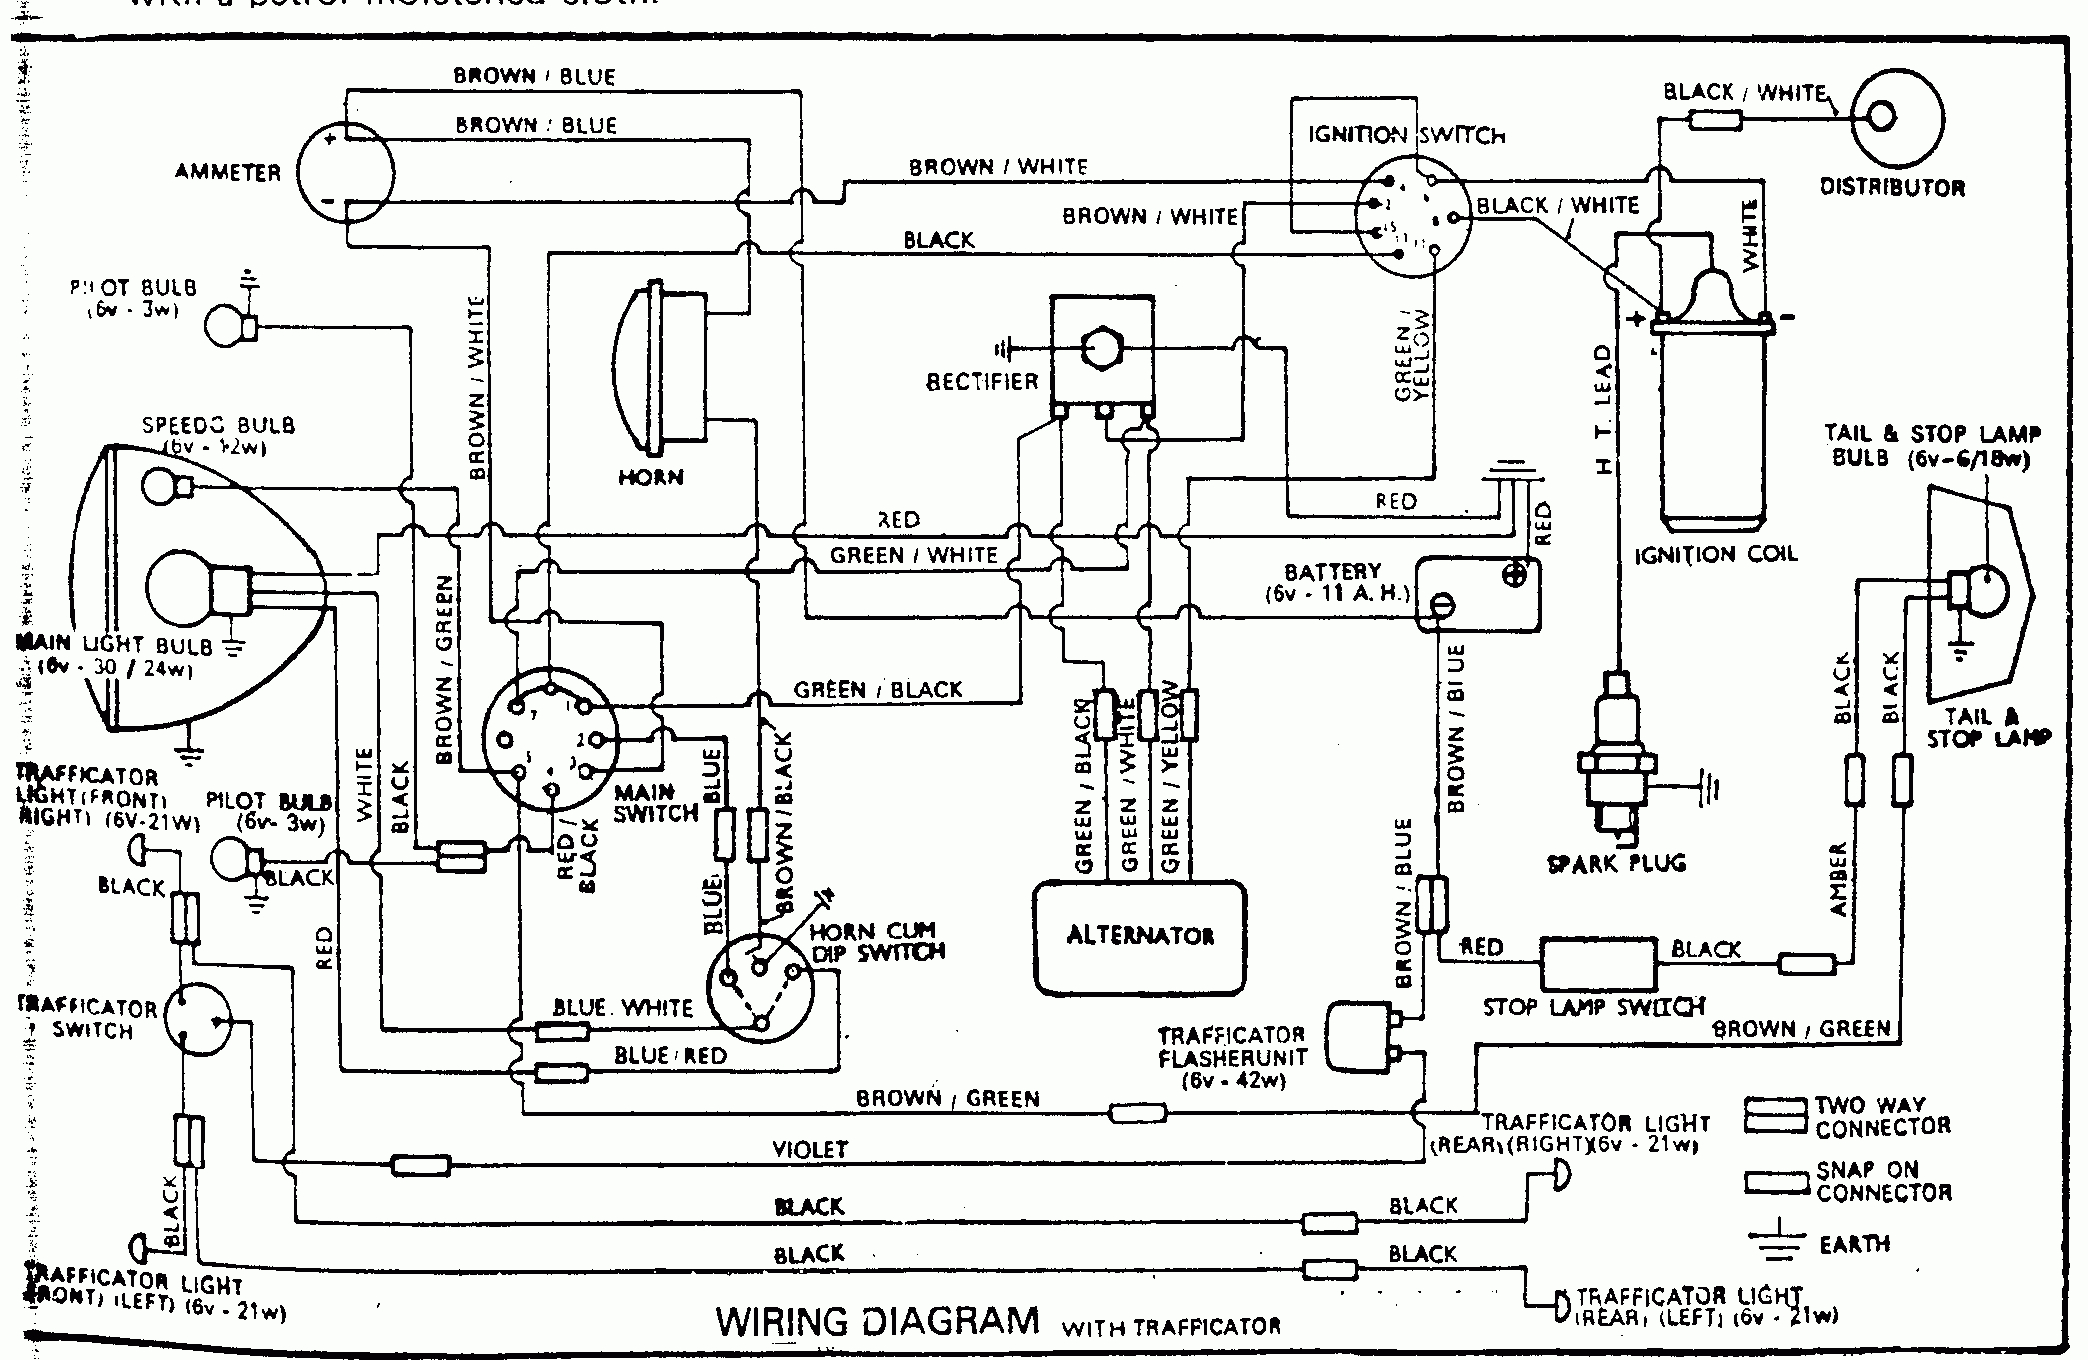 Bike Wiring Diagram Pdf - Wiring Block Diagram - Ac Wiring Diagram Pdf